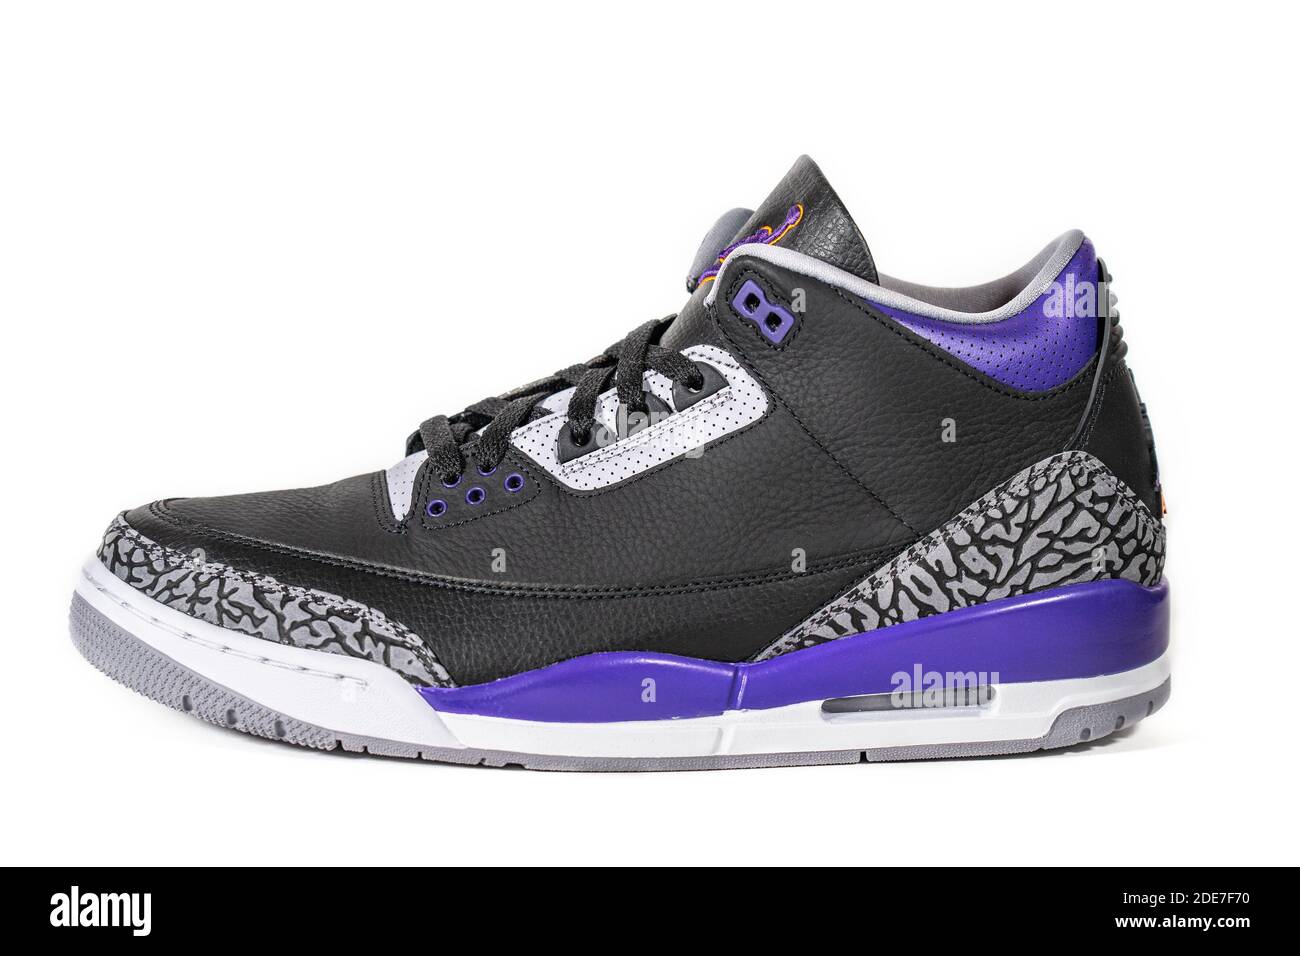 Air Jordan 3 Retro court Purple - légendaire célèbre Nike et Jordan marque  rétro basket-ball ou